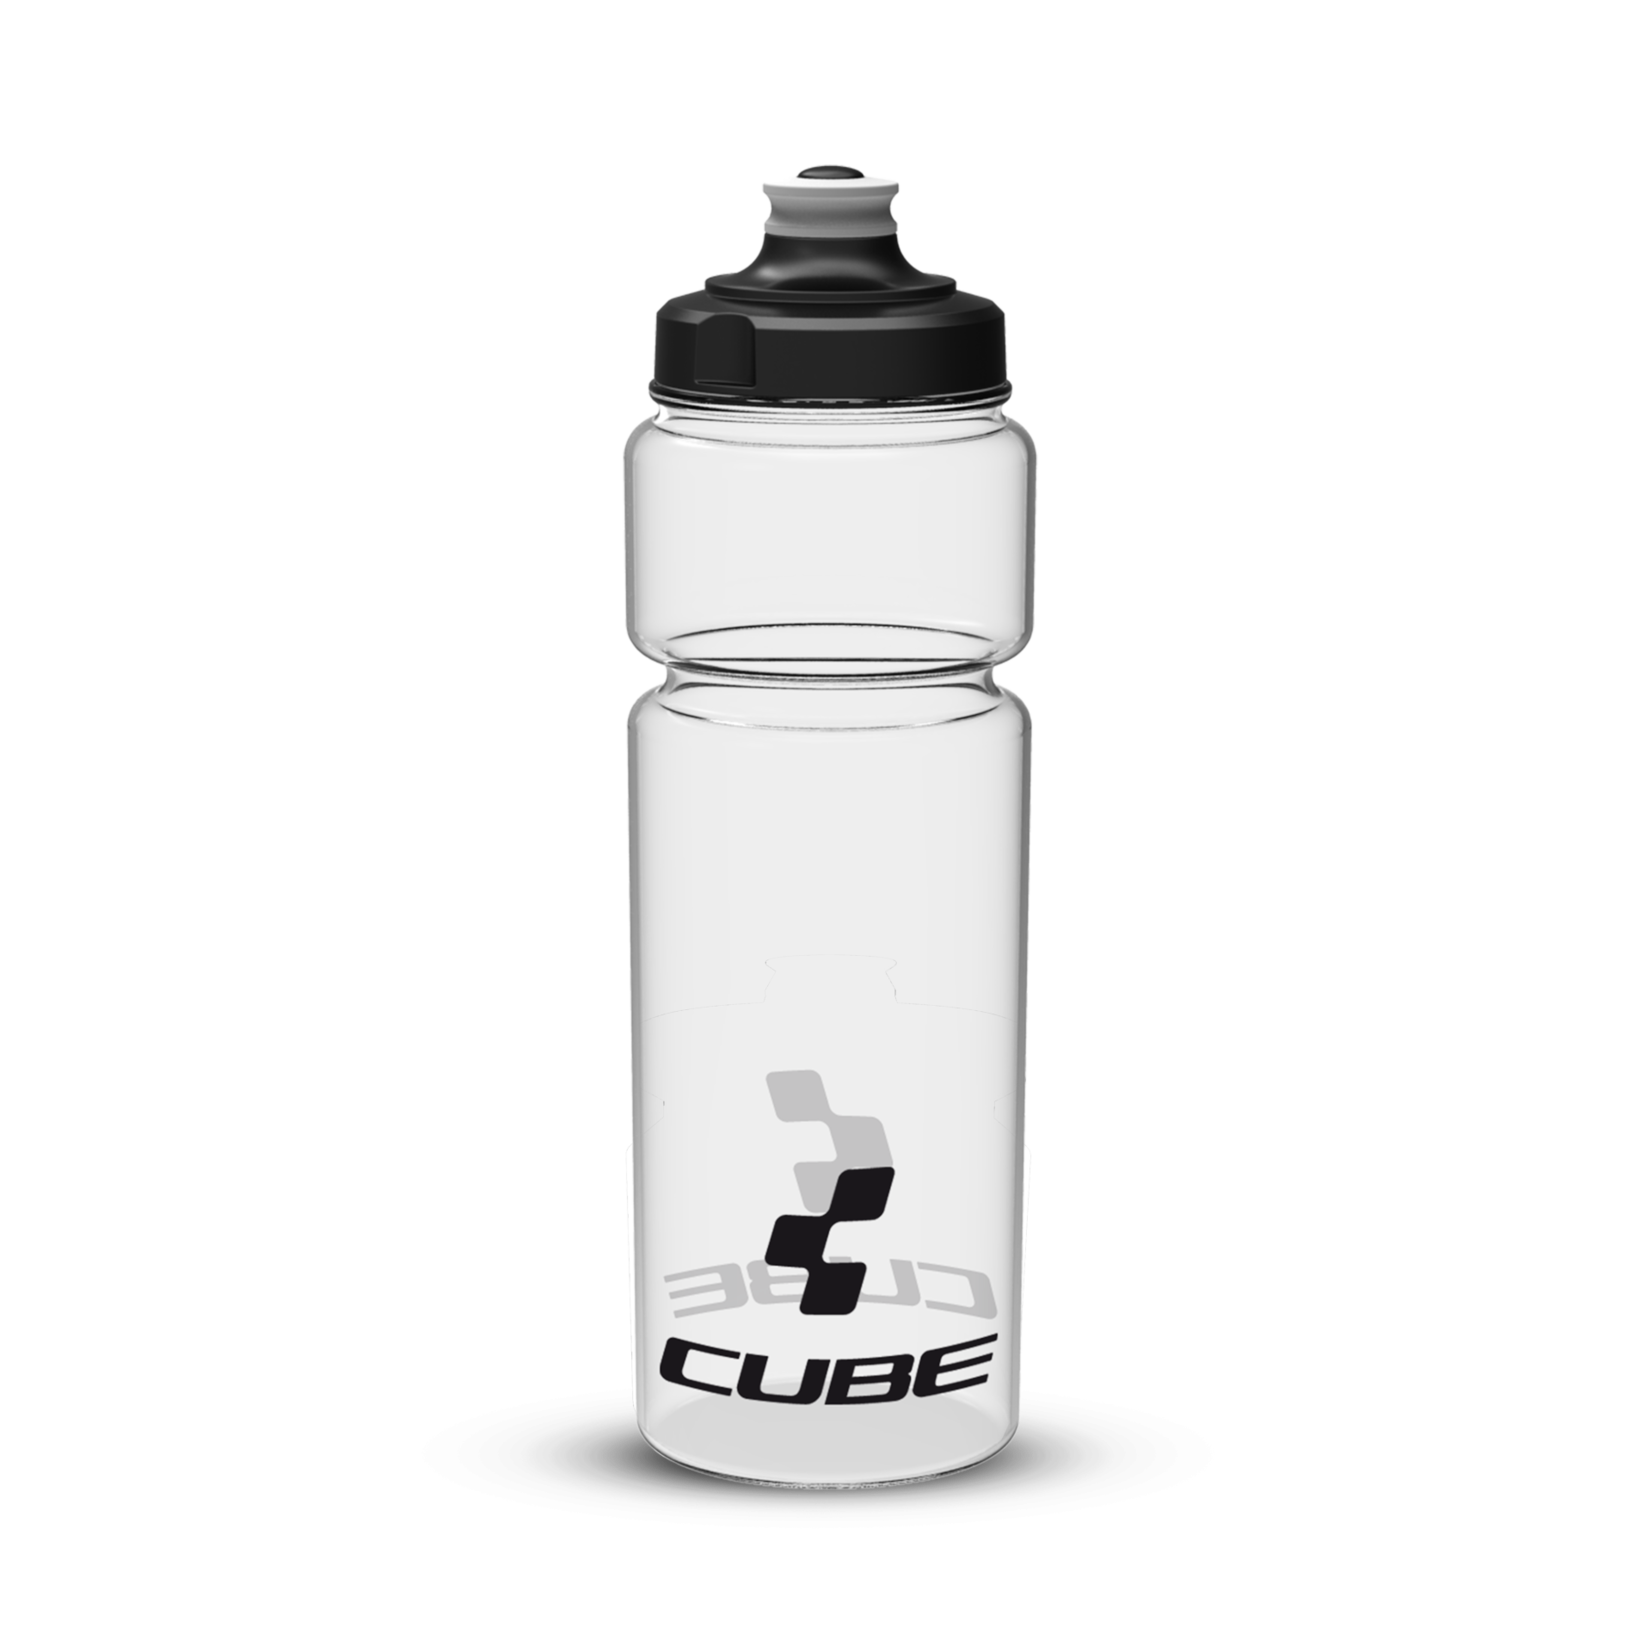 Cube CUBE Water Bottle